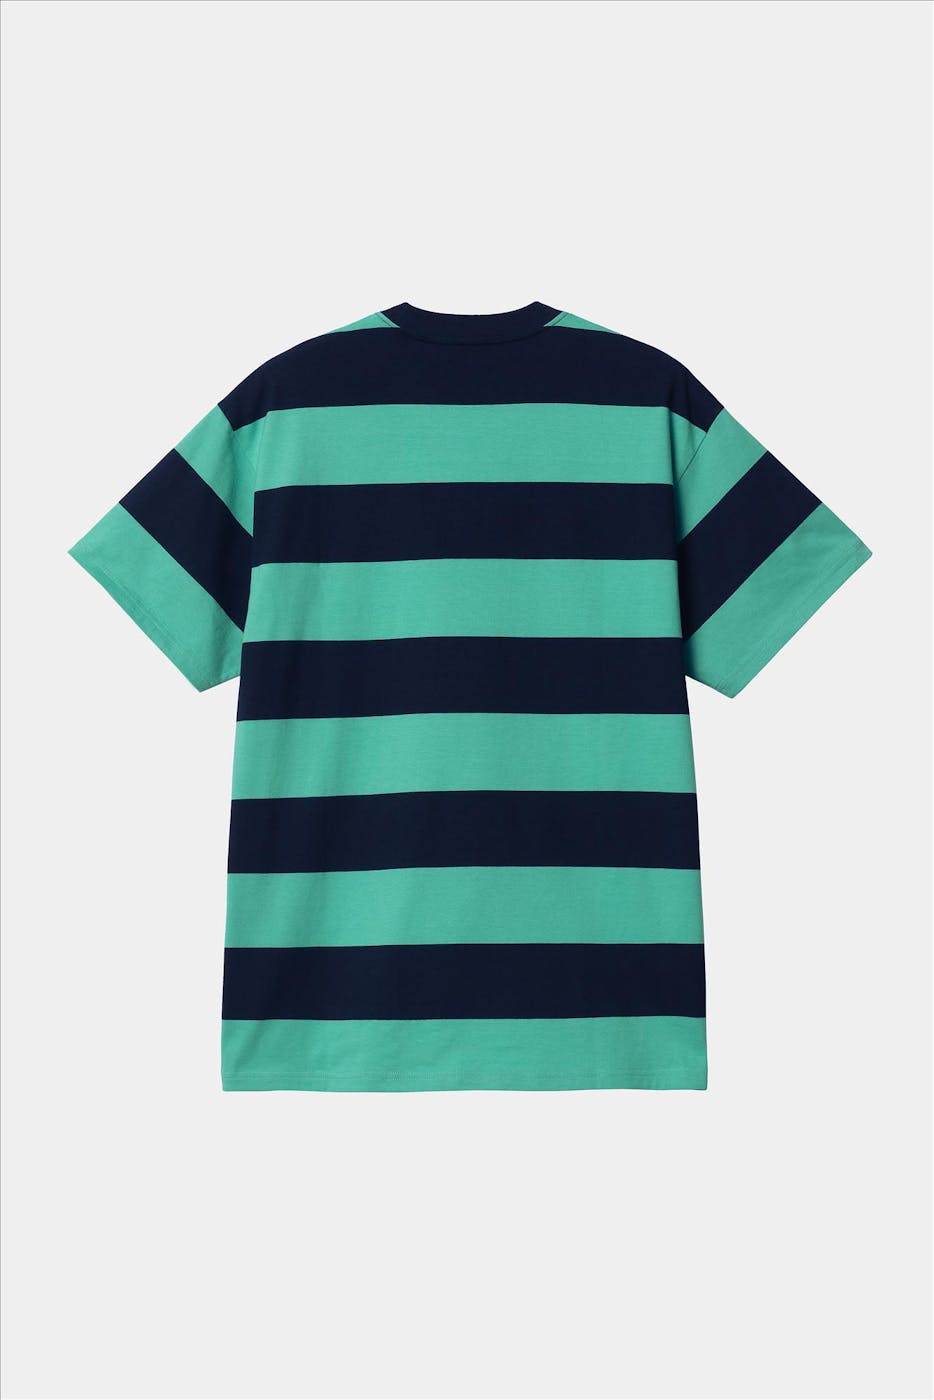 Carhartt WIP - Donkerblauwe-groene Dampier T-shirt